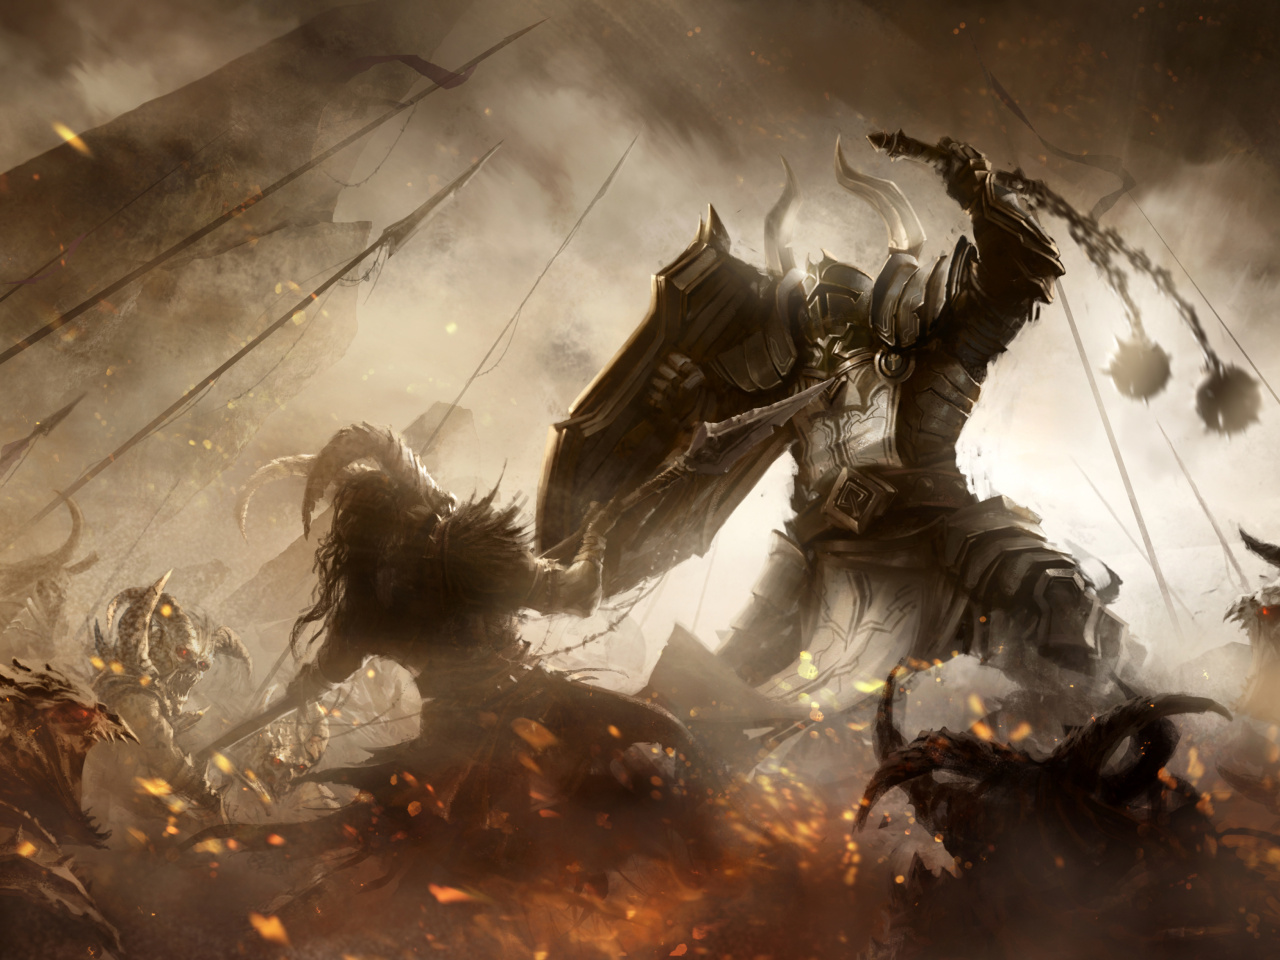 Das Diablo III battle of knights Wallpaper 1280x960